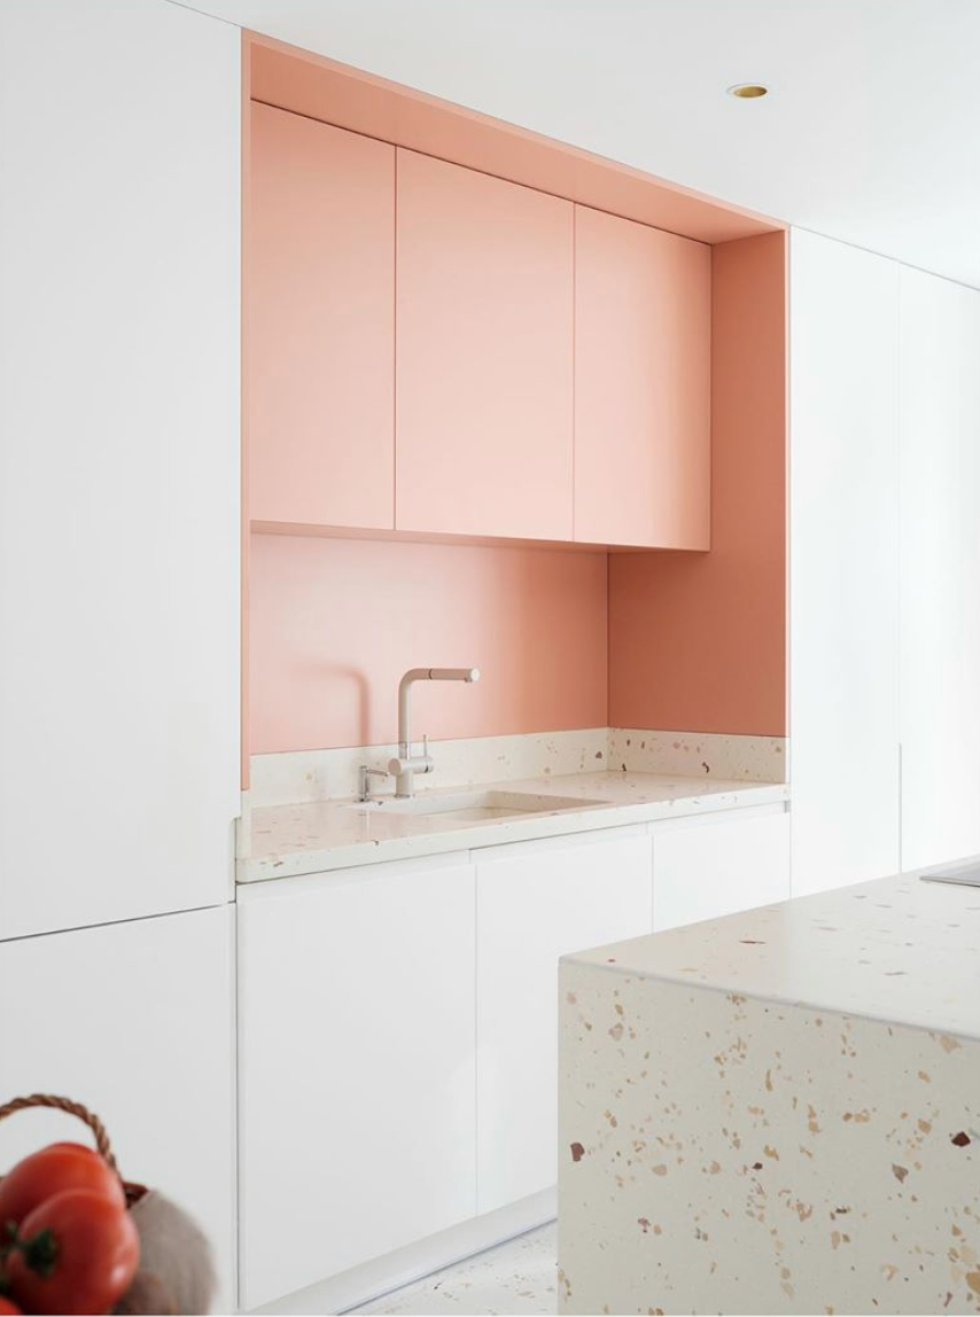 Two-tone kitchen white & pink